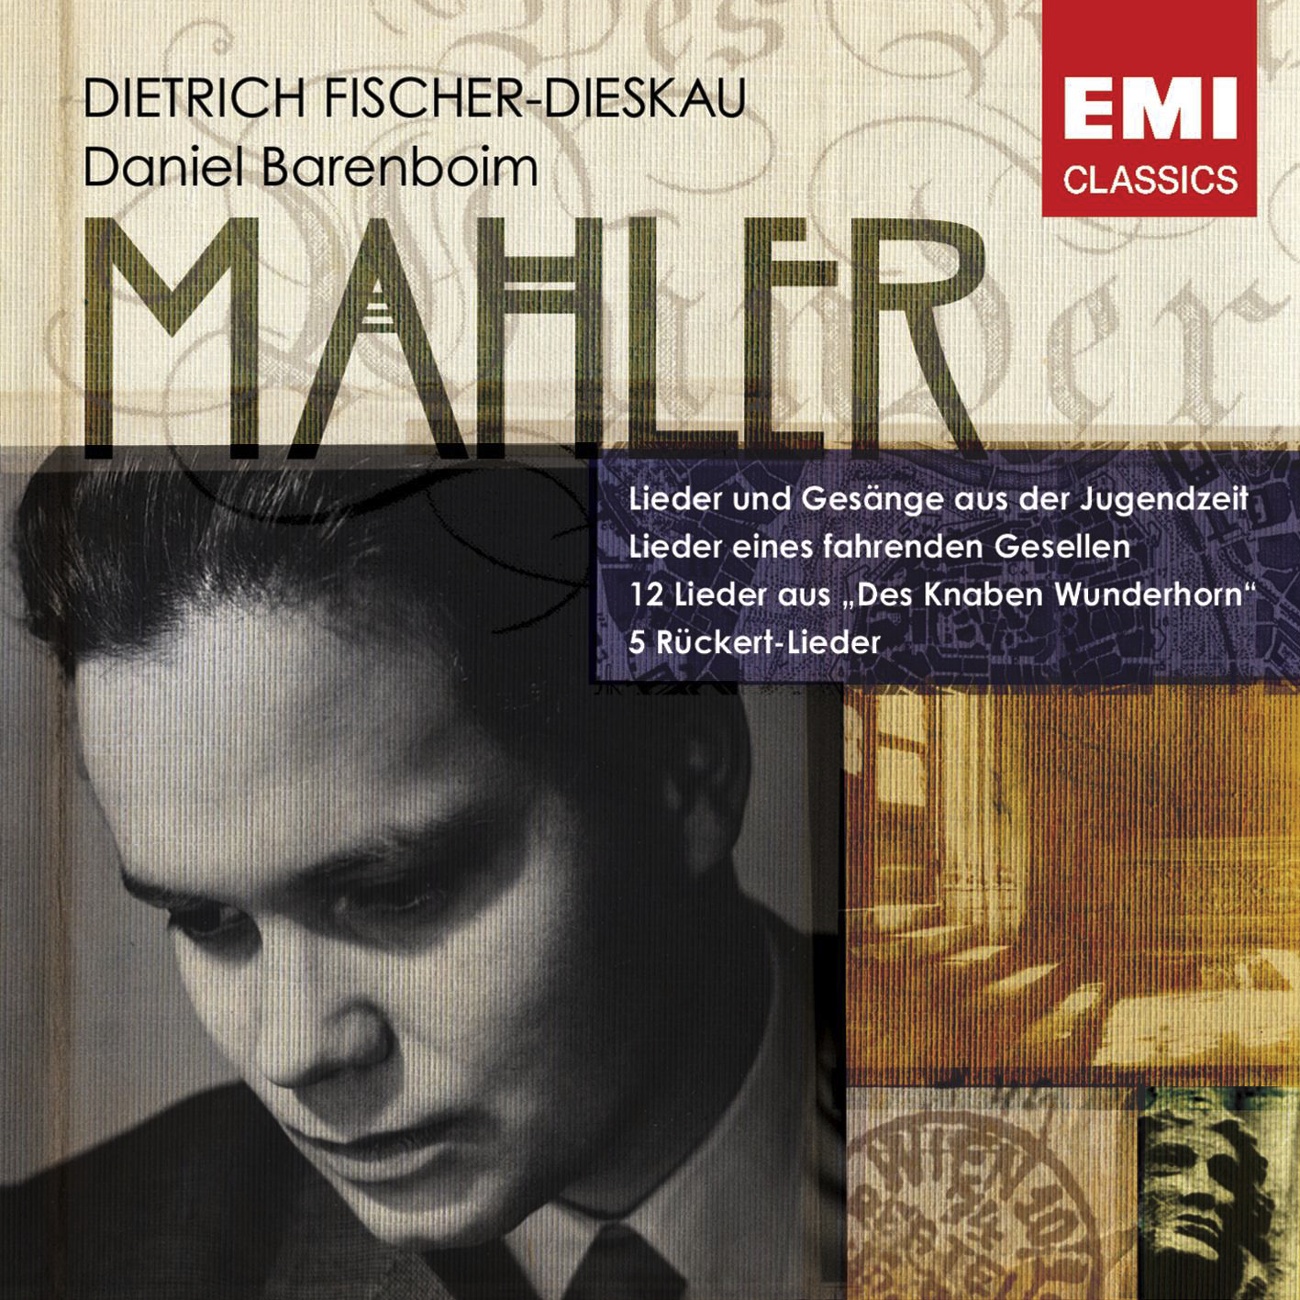 Lieder eines fahrenden Gesellen Mahler 2005 Digital Remaster: Ich hab' ein glü hend' Messer